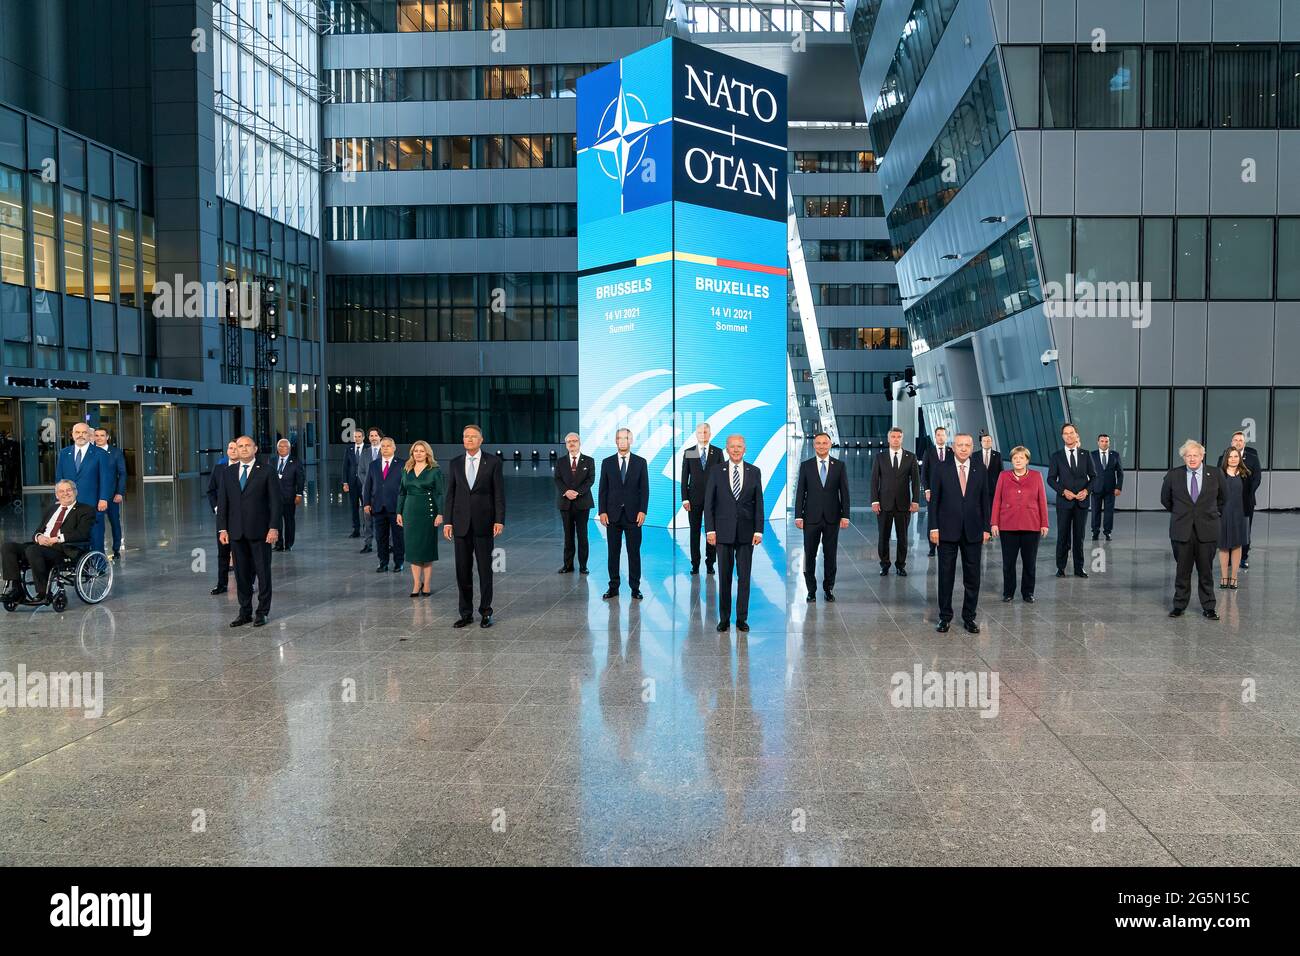 Le président Joe Biden présente une photo de groupe aux dirigeants de l'OTAN le lundi 14 juin 2021, au siège de l'OTAN à Bruxelles. (Photo officielle de la Maison Blanche par Adam Schultz) Banque D'Images